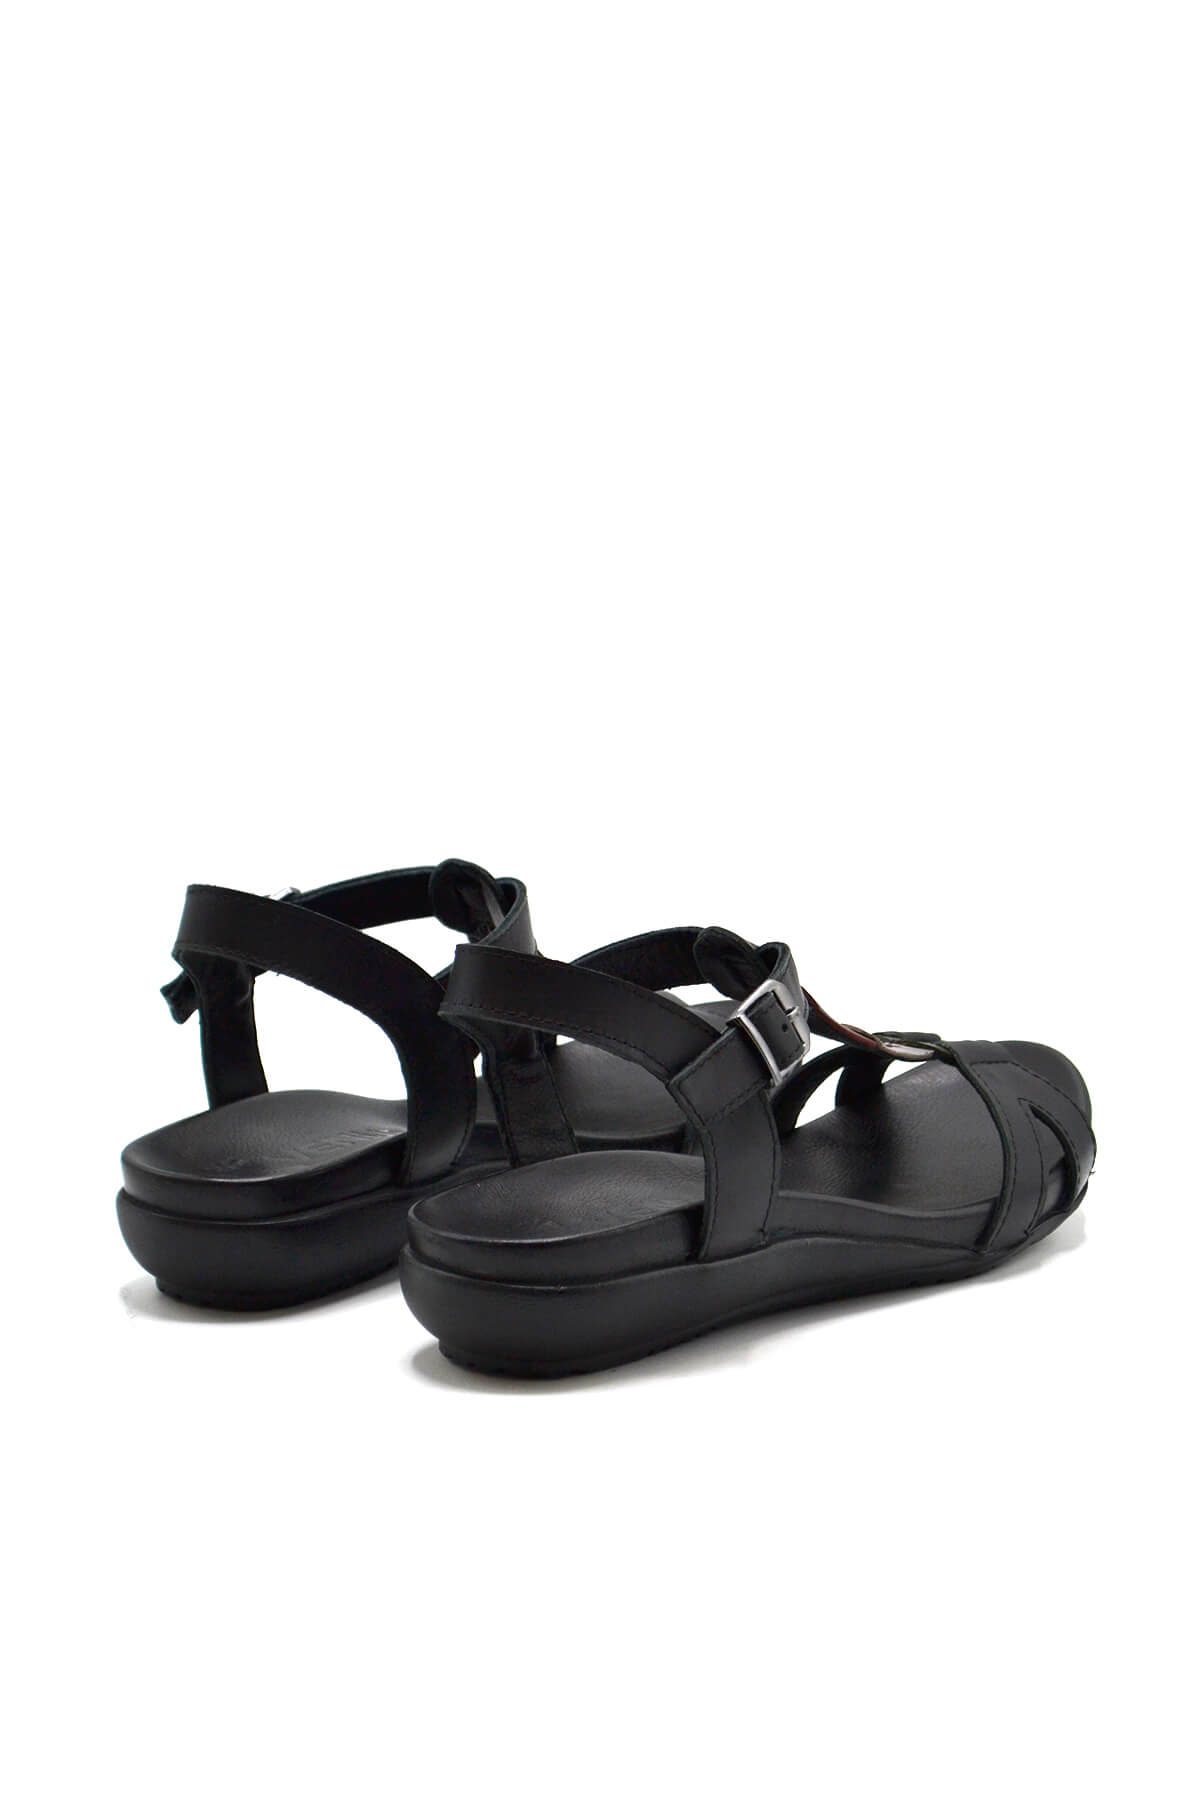 Kadın Comfort Deri Sandalet Siyah 297Y